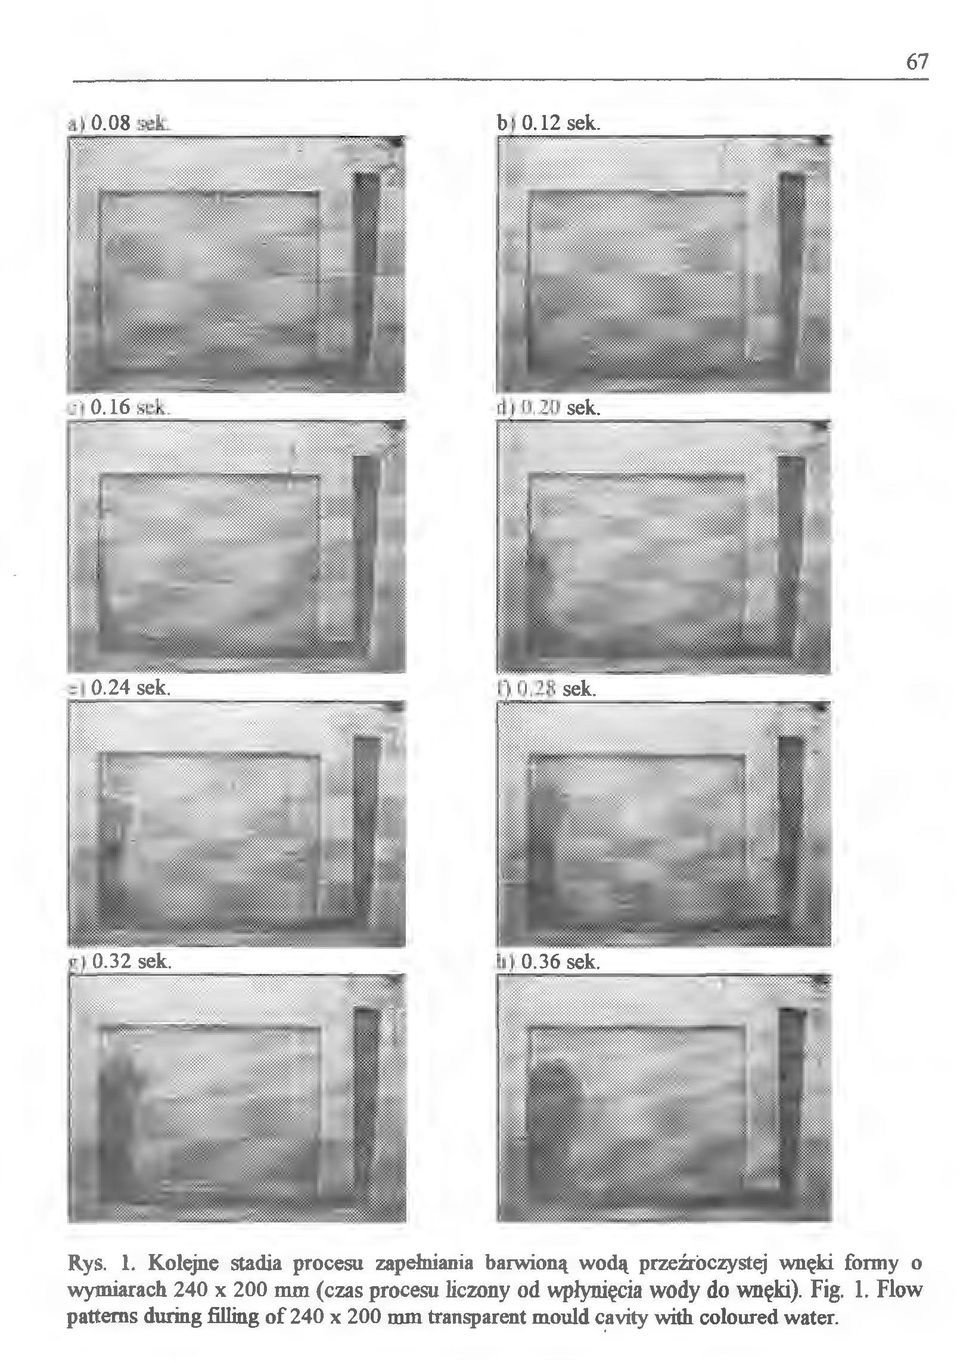 wnęki formy o wymiarach 240 x 200 mm (czas procesu liczony od